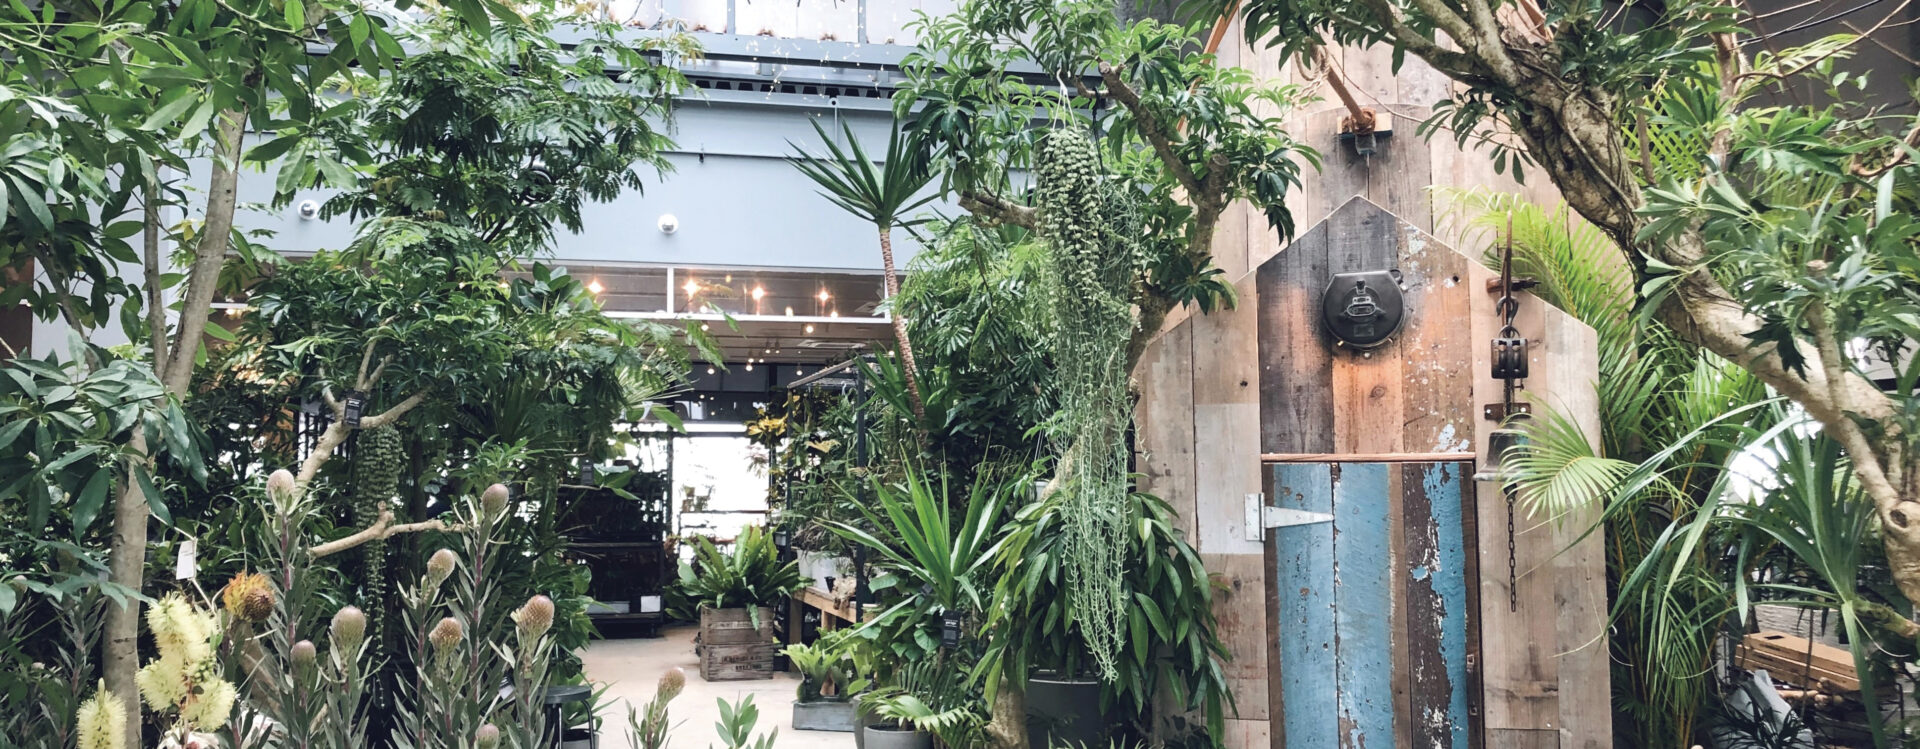 garage YOKOHAMA | garage living with plants